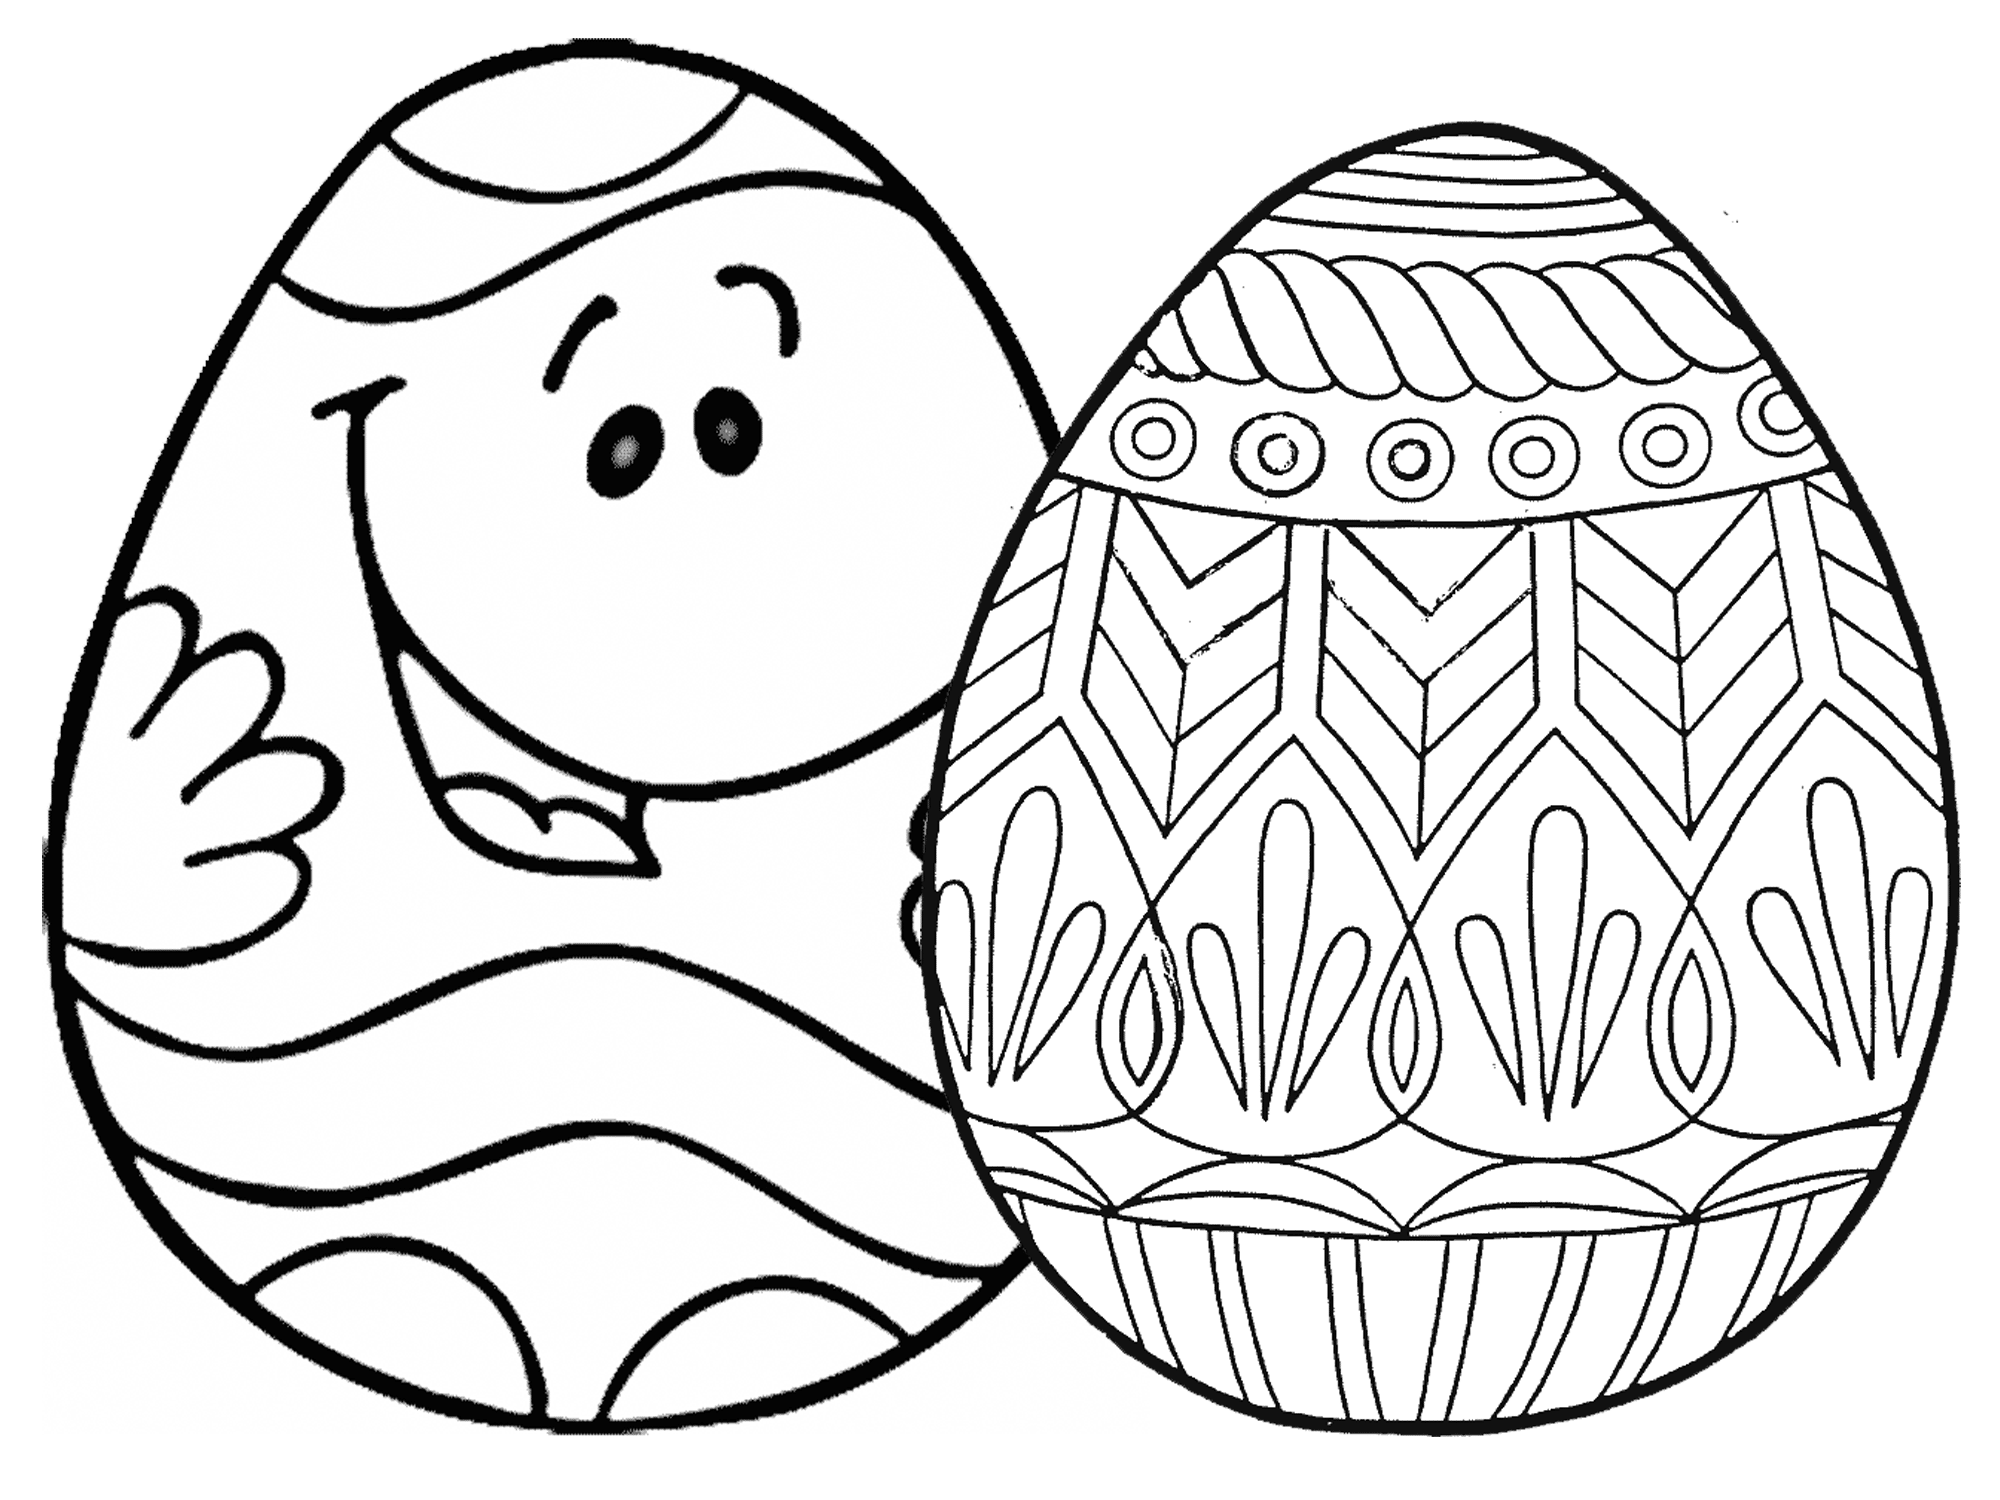 Tổng hợp các bức tranh tô màu quả trứng cho bé